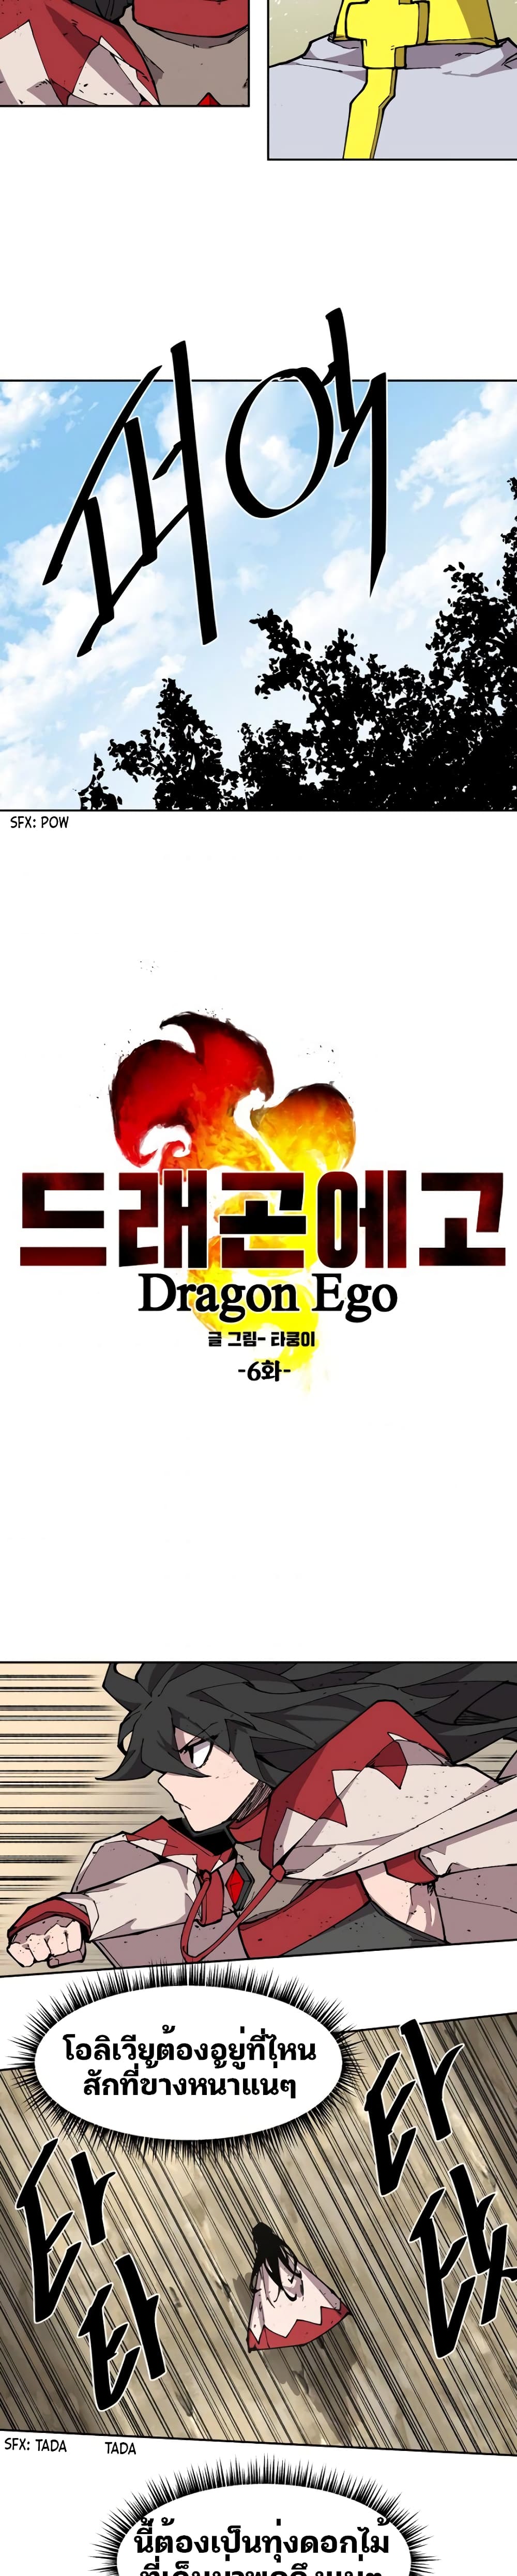 Dragon Ego 6-6